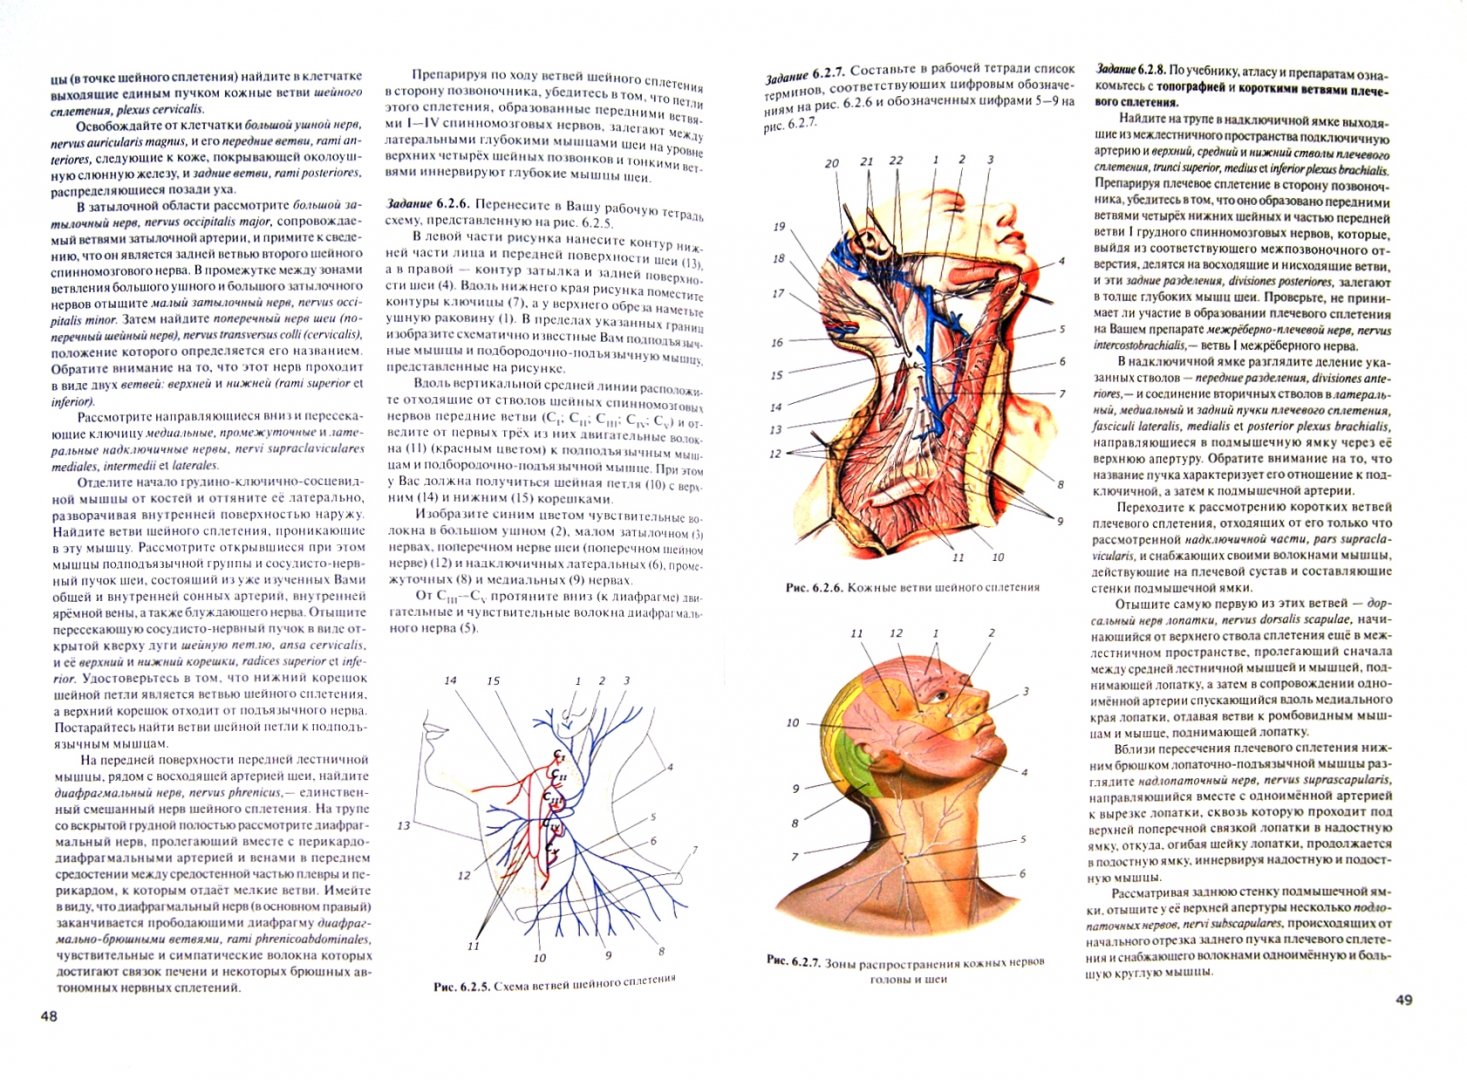 Иллюстрация 1 из 5 для Практикум по анатомии человека. Часть 4. Нервная система и органы чувств - Цыбулькин, Горская, Колесников | Лабиринт - книги. Источник: Лабиринт